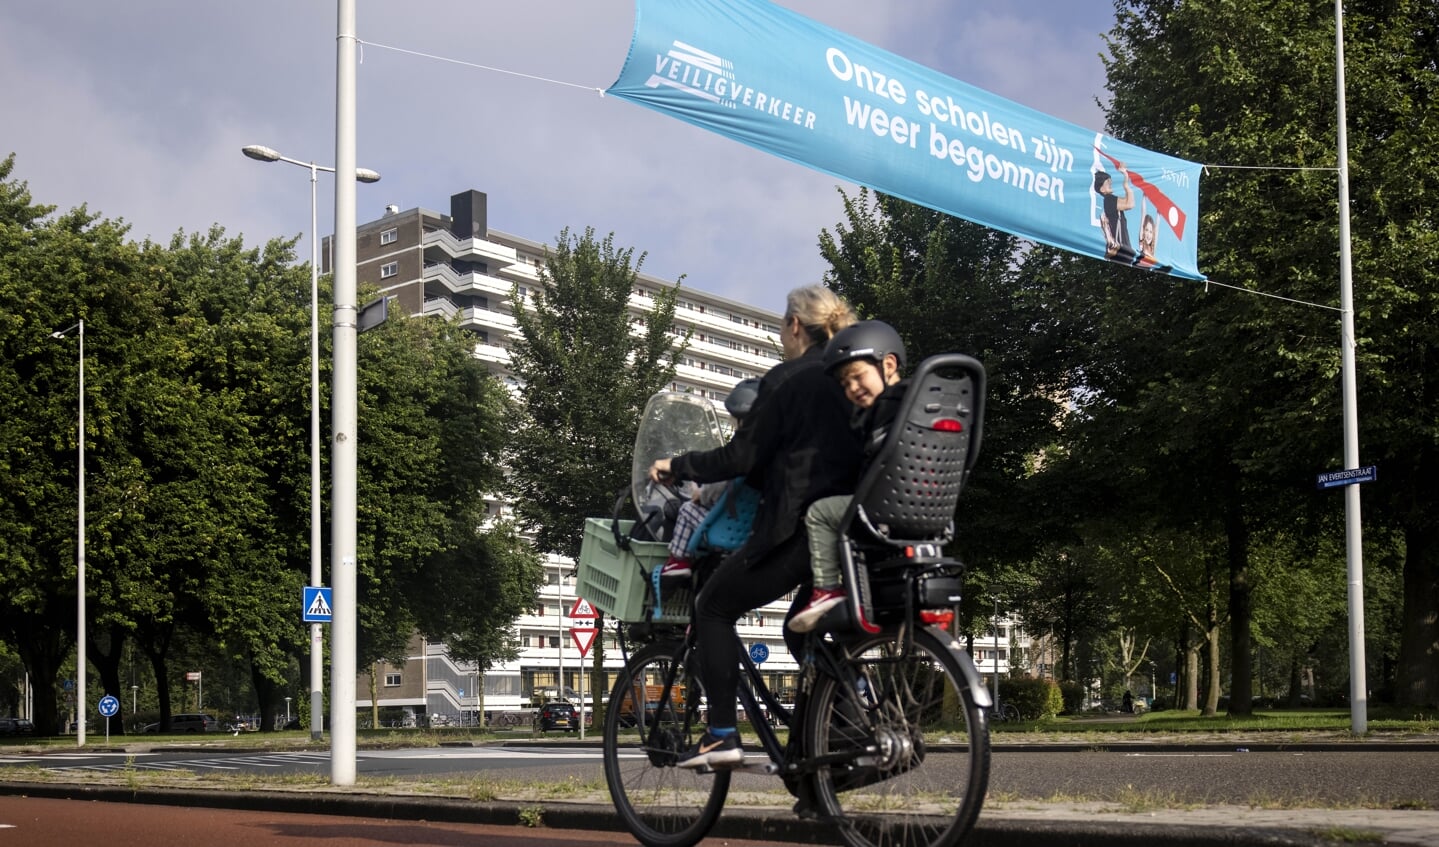 Niemand kan de boodschap van de jaarlijkse campagne van Veilig Verkeer Nederland ontgaan: de scholen beginnen bijna weer; let op de kinderen.